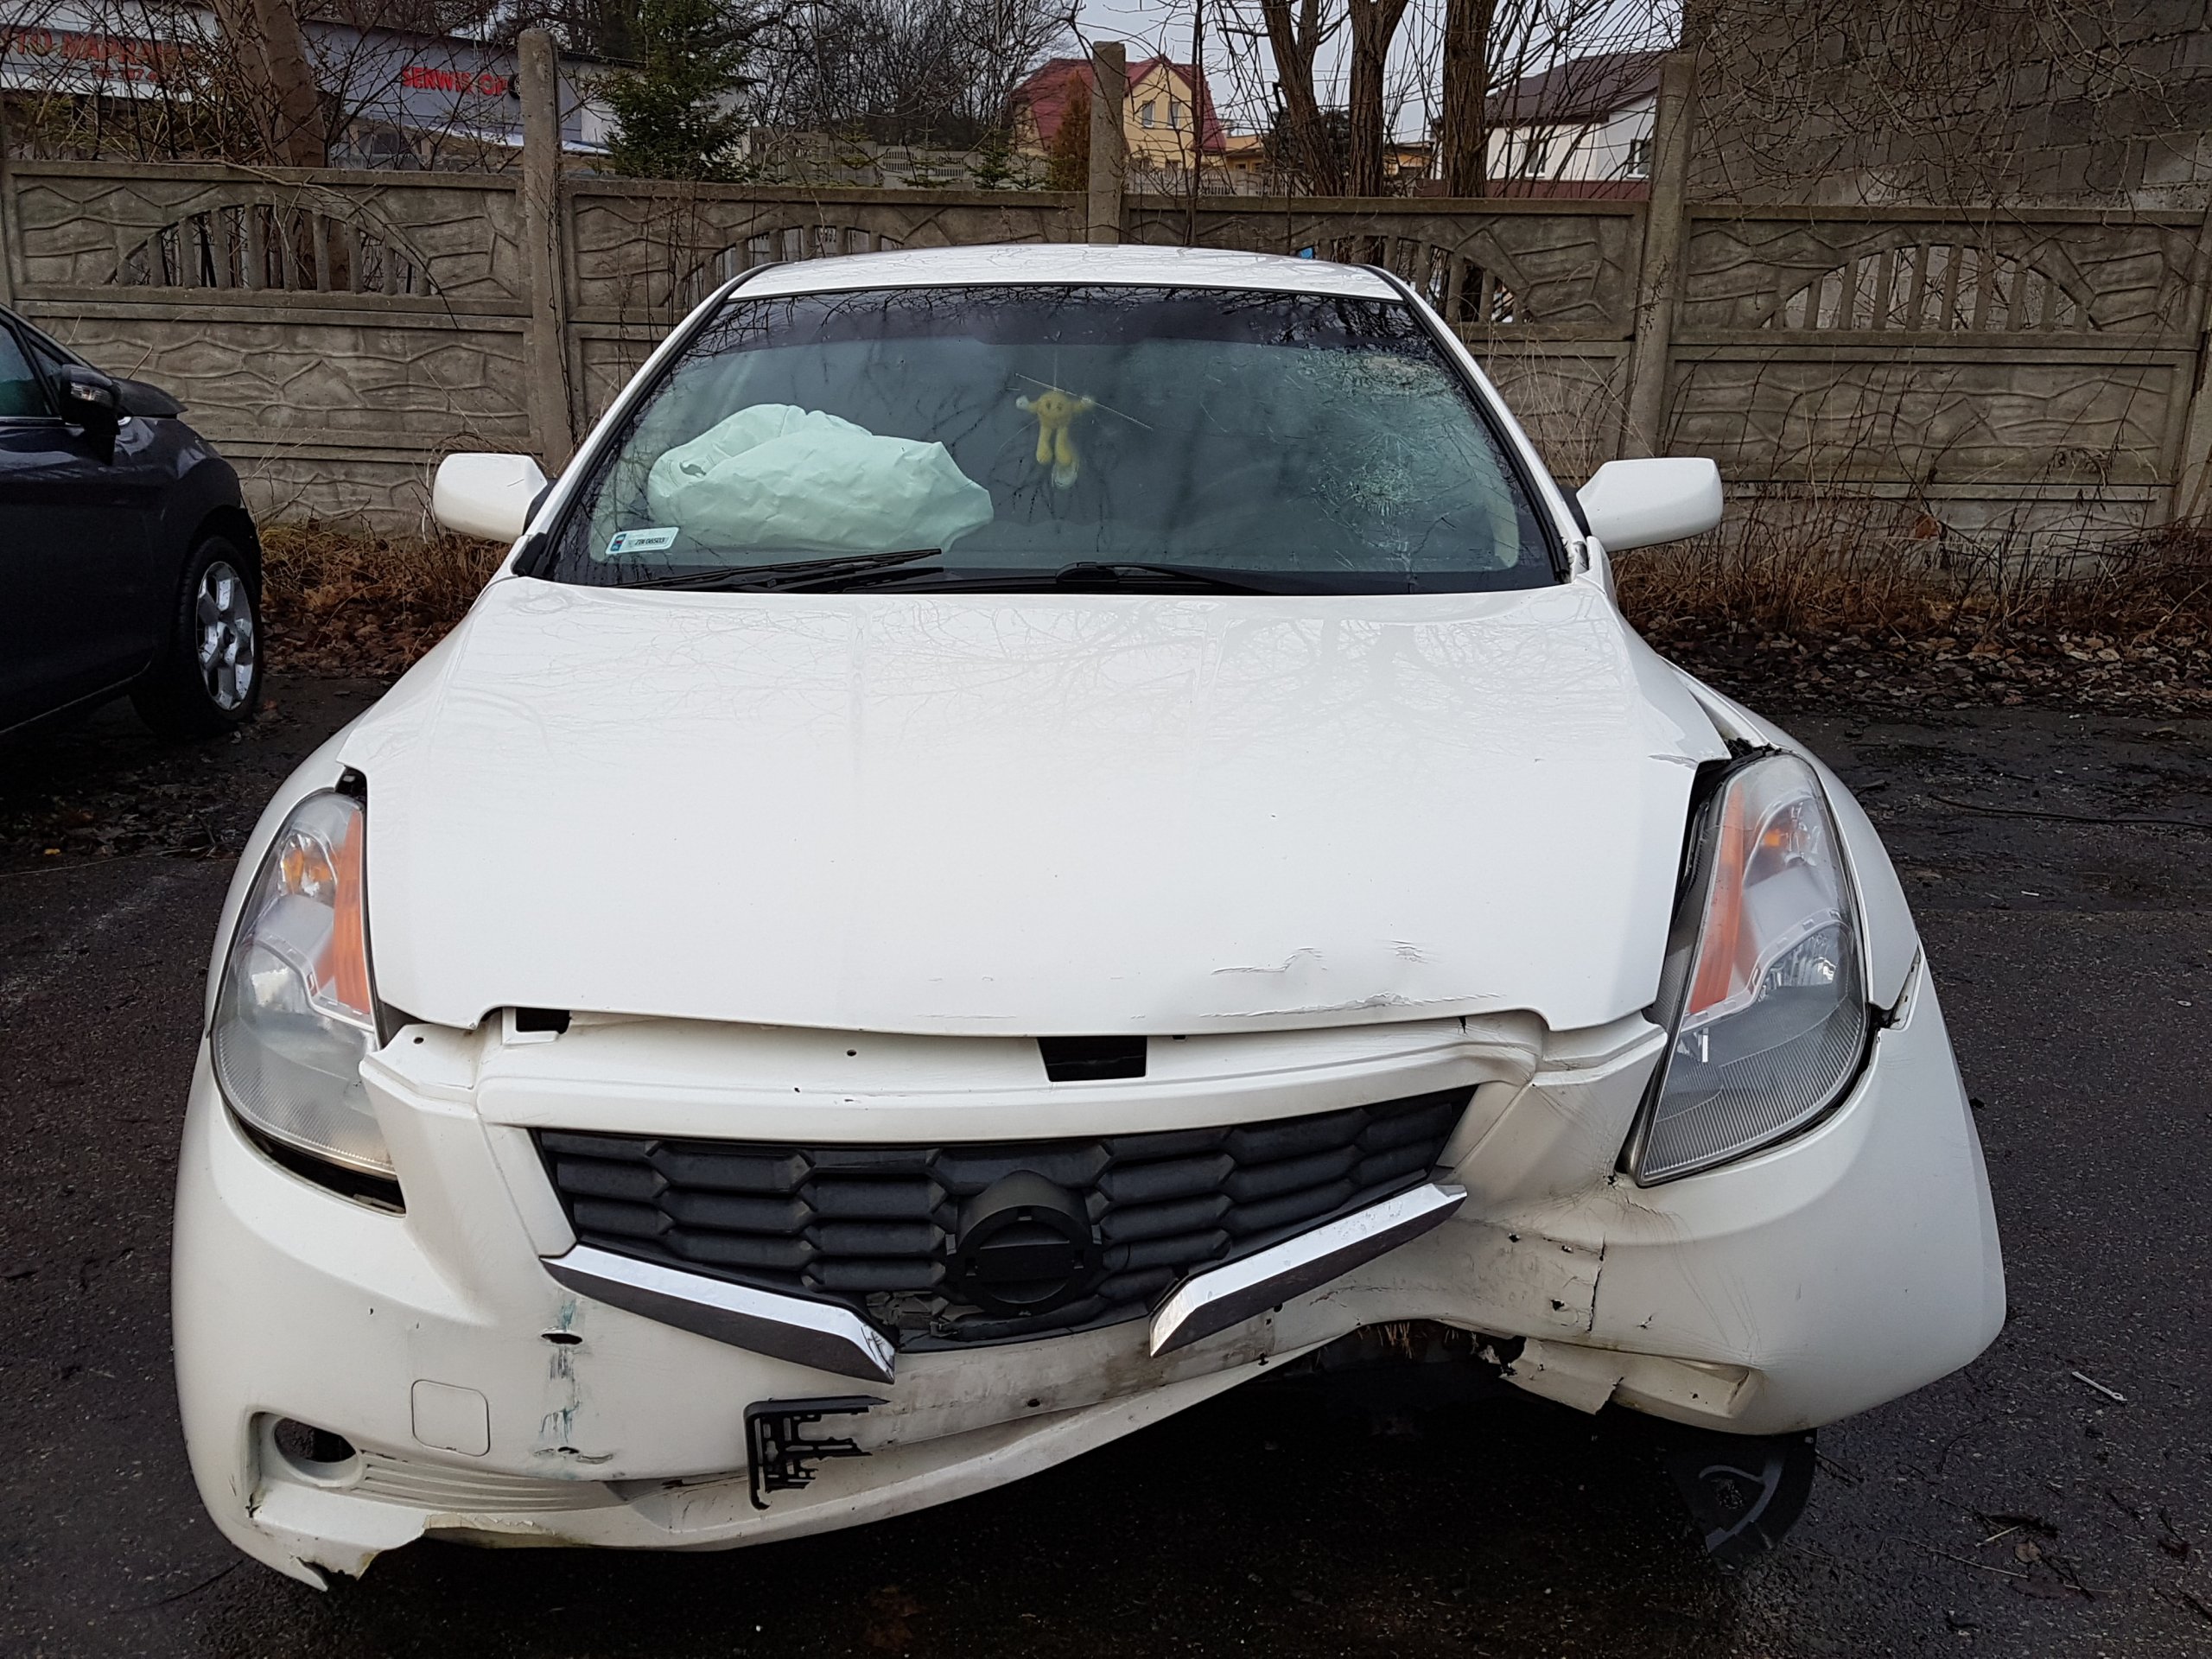 Nissan Altima Coupe uszkodzony 7109296818 oficjalne